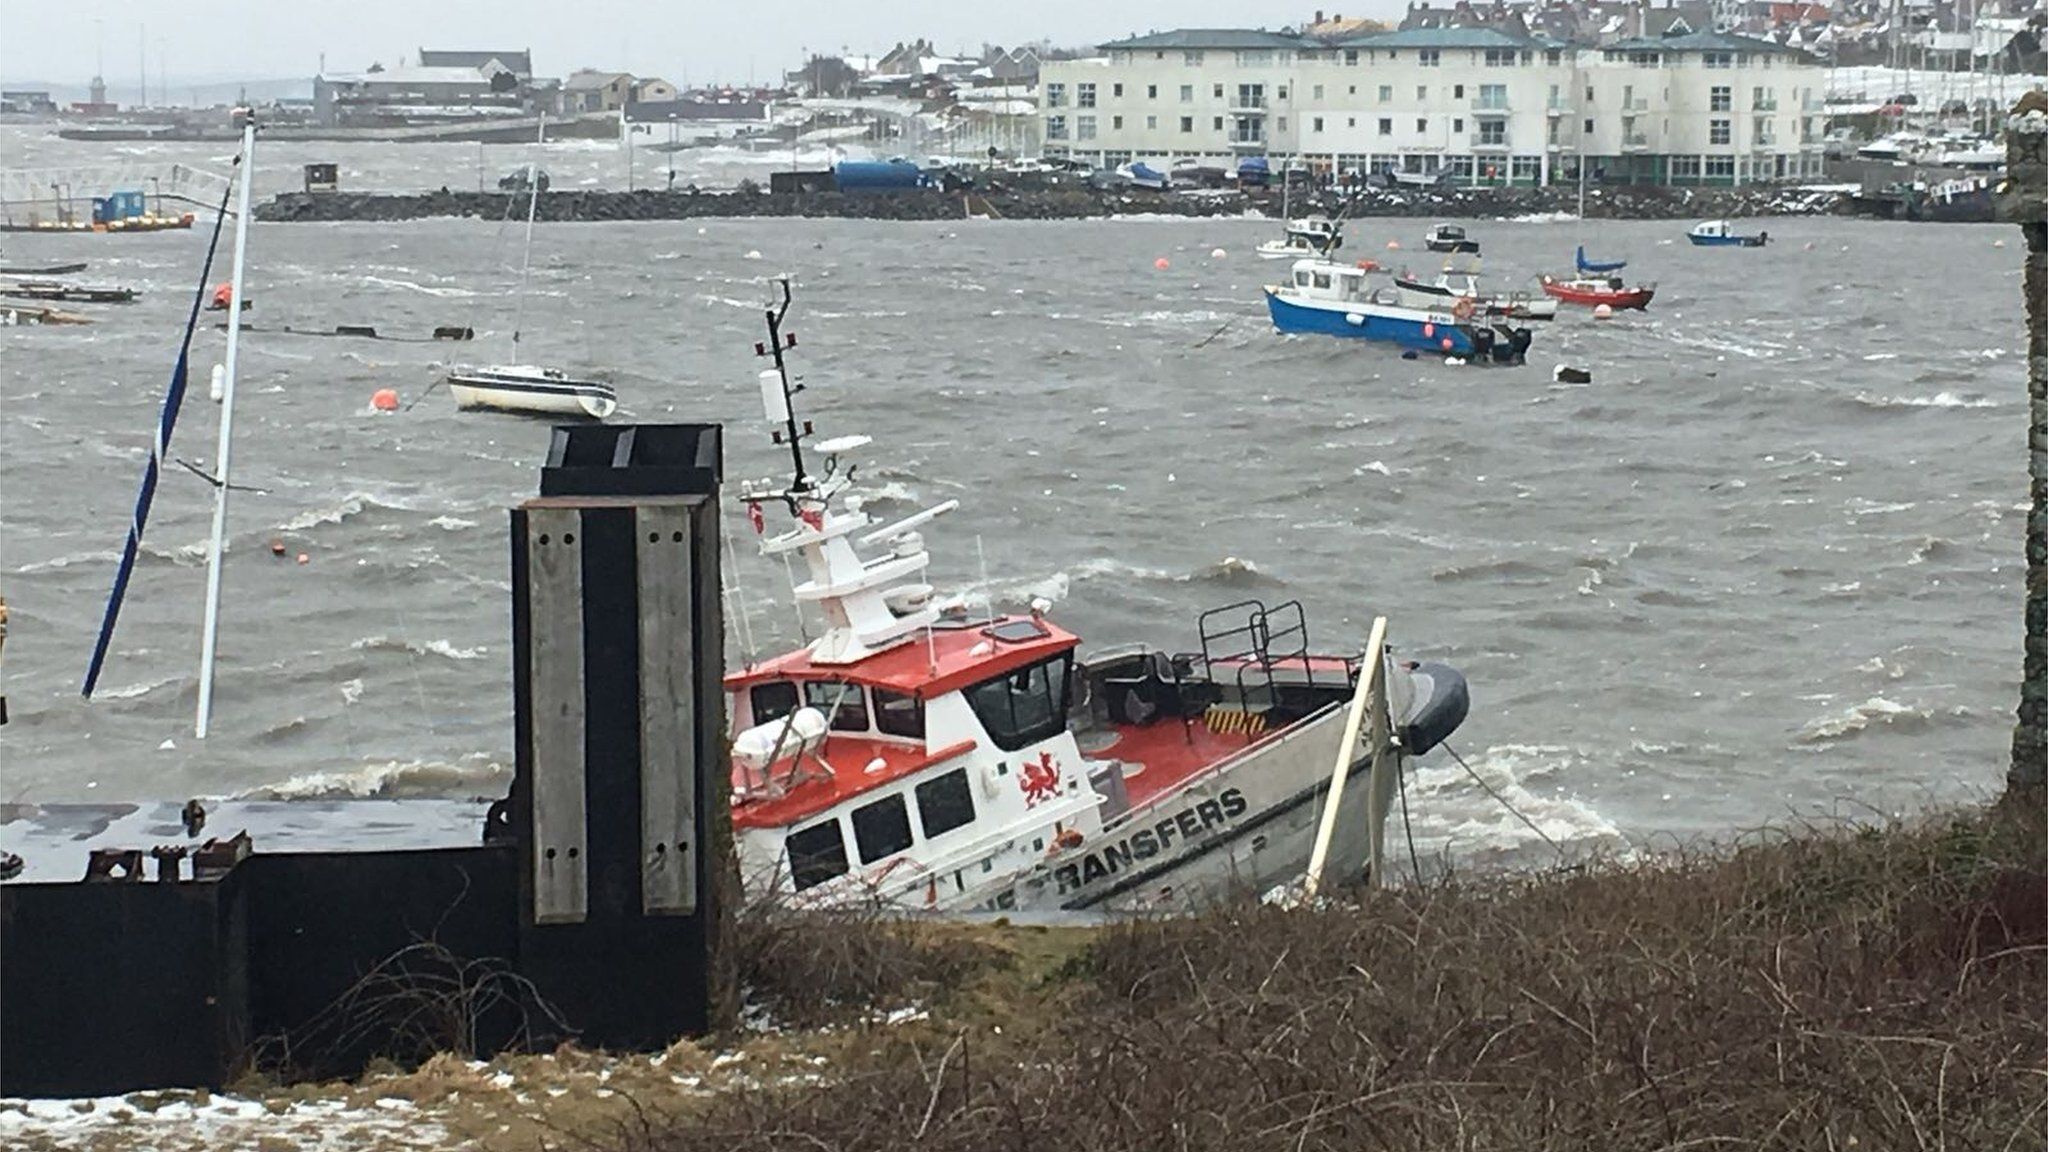 Holyhead marina - boat smashed against marina wall